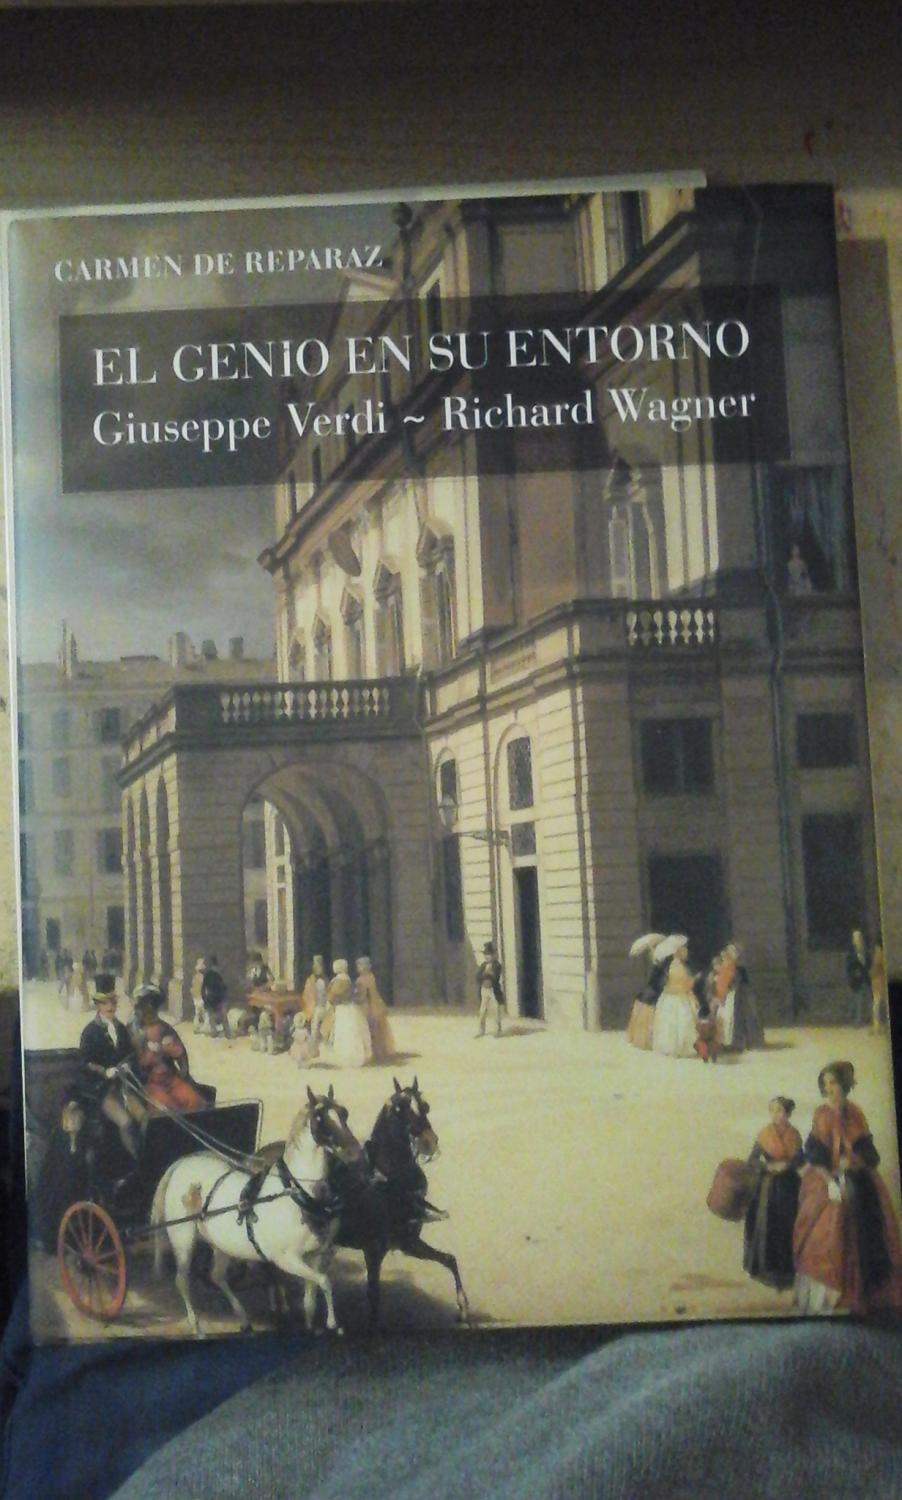 EL GENIO EN SU ENTORNO: Giuseppe Verdi en Sant' Agata, Richard Wagner en Tribschen (Barcelona, 2007) - Carmen de Reparaz